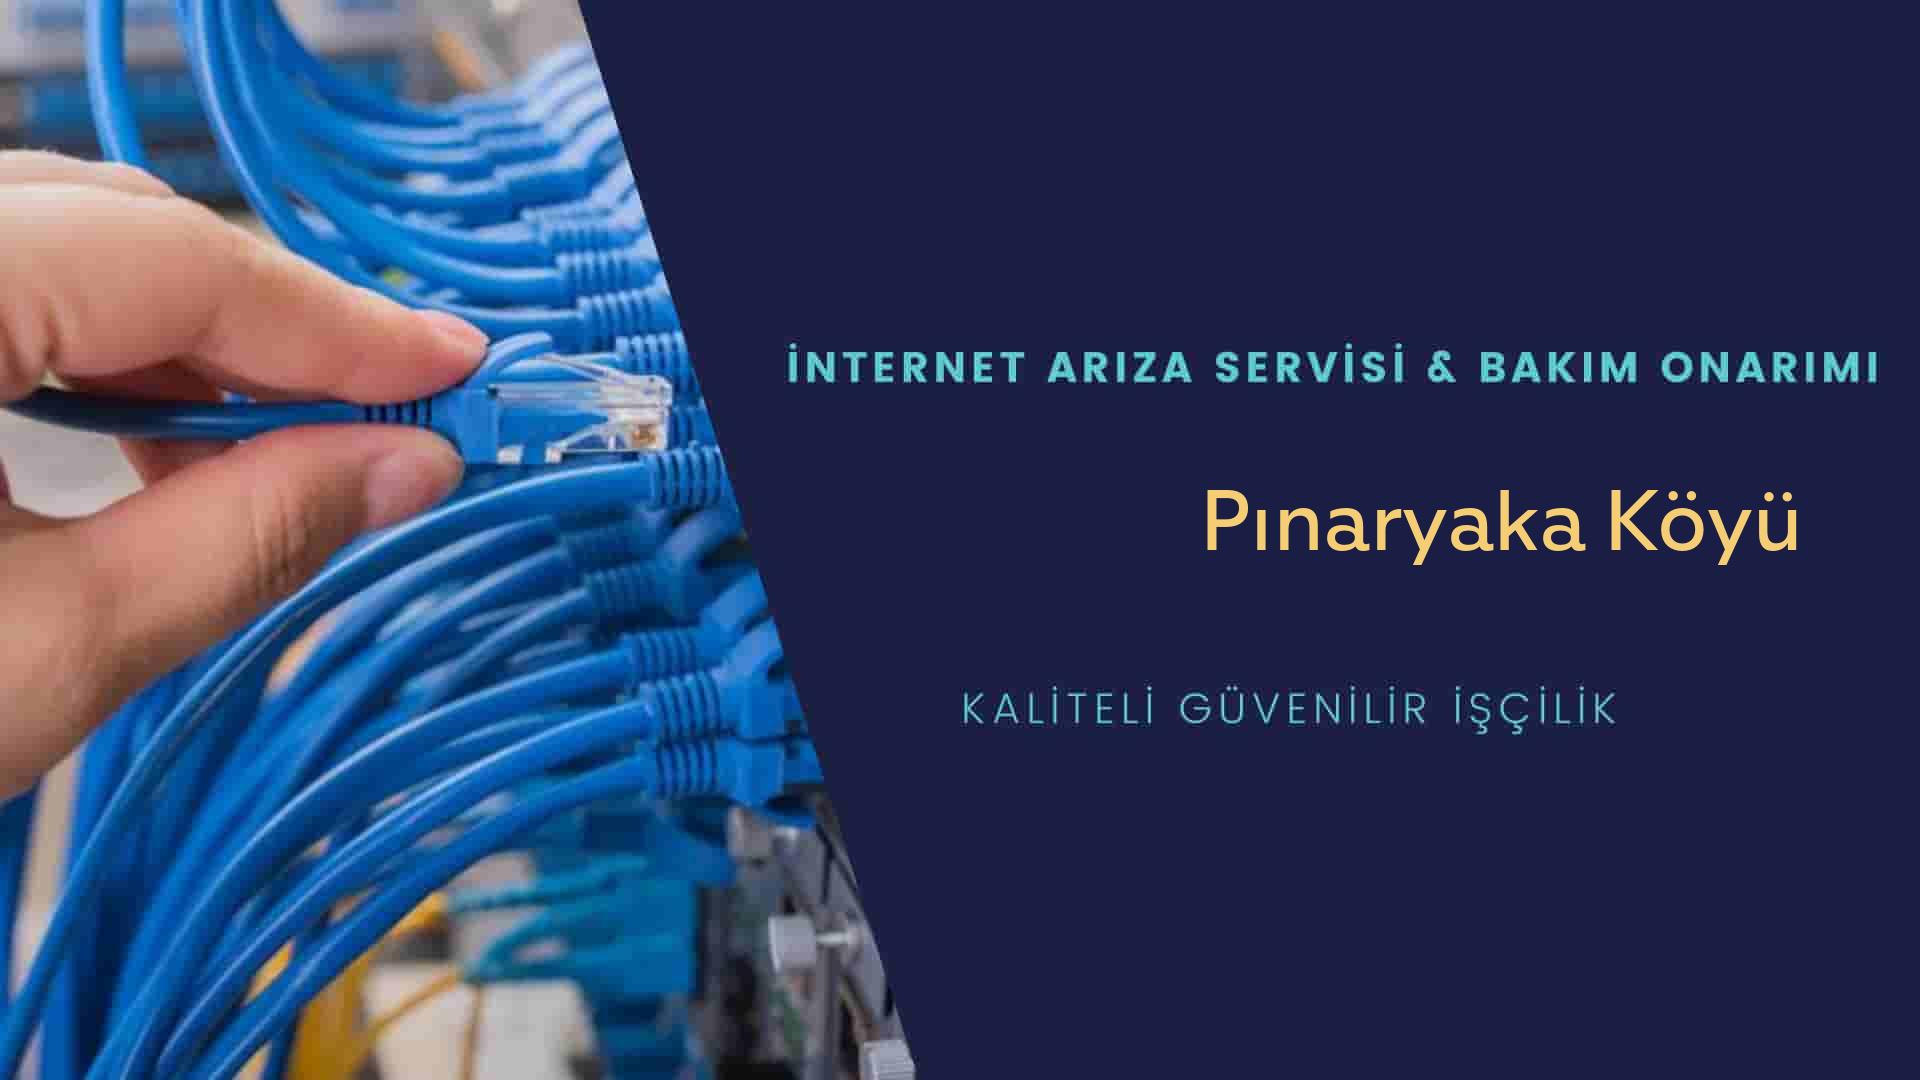 Pınaryaka Köyü internet kablosu çekimi yapan yerler veya elektrikçiler mi? arıyorsunuz doğru yerdesiniz o zaman sizlere 7/24 yardımcı olacak profesyonel ustalarımız bir telefon kadar yakındır size.